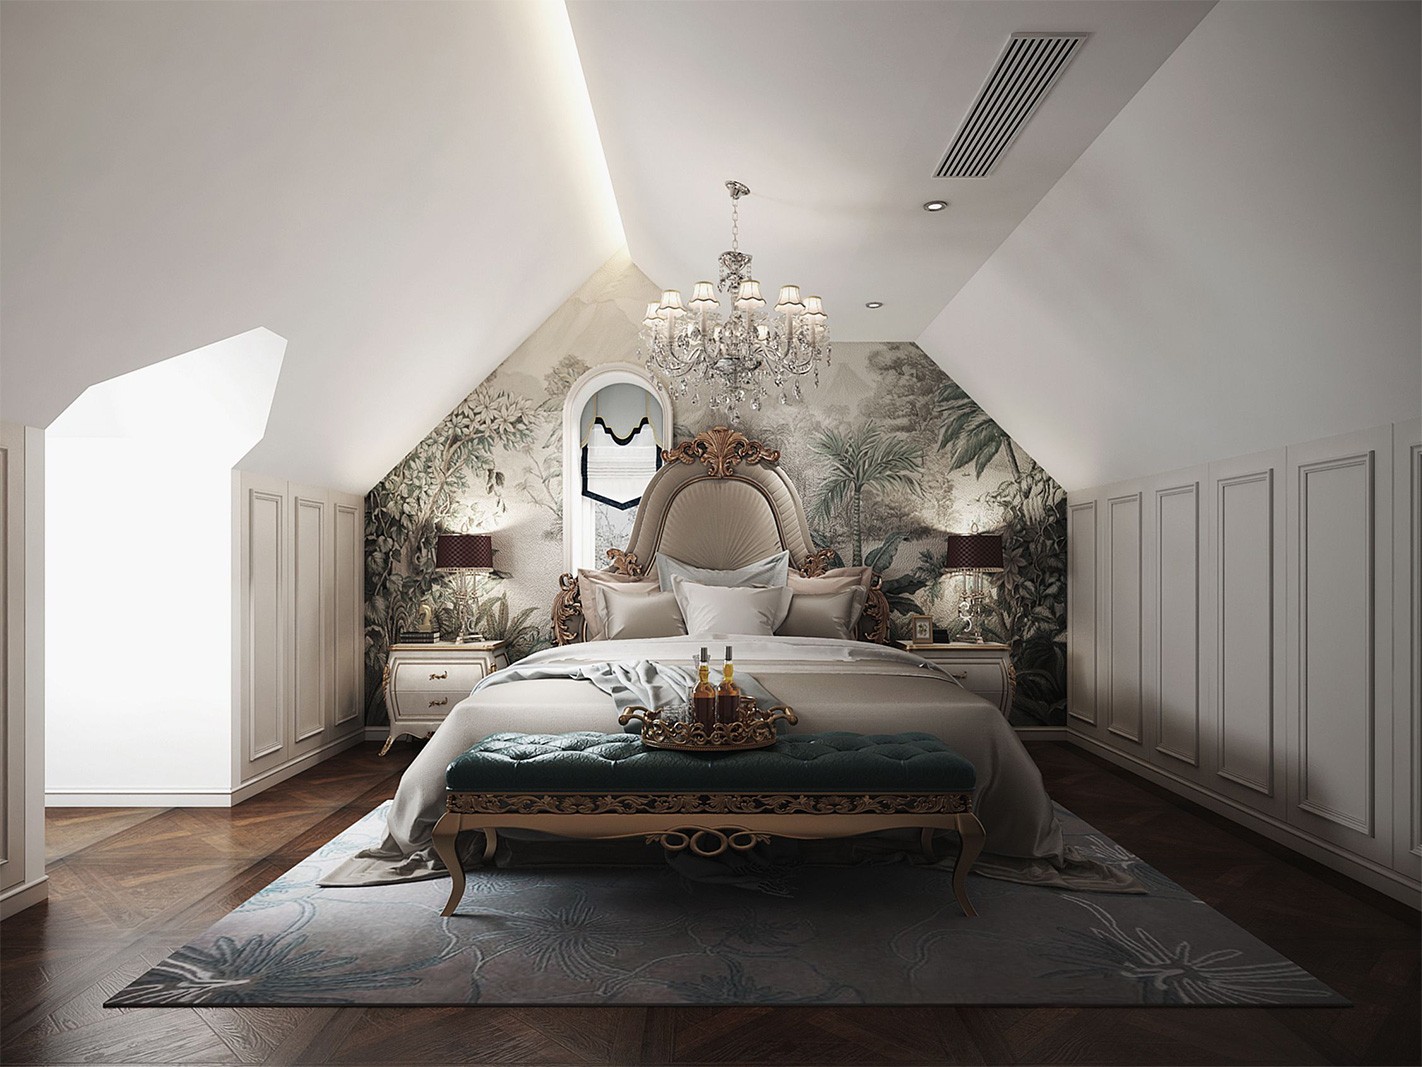 松江区橡树庄园500平欧式风格独栋别墅卧室装修效果图